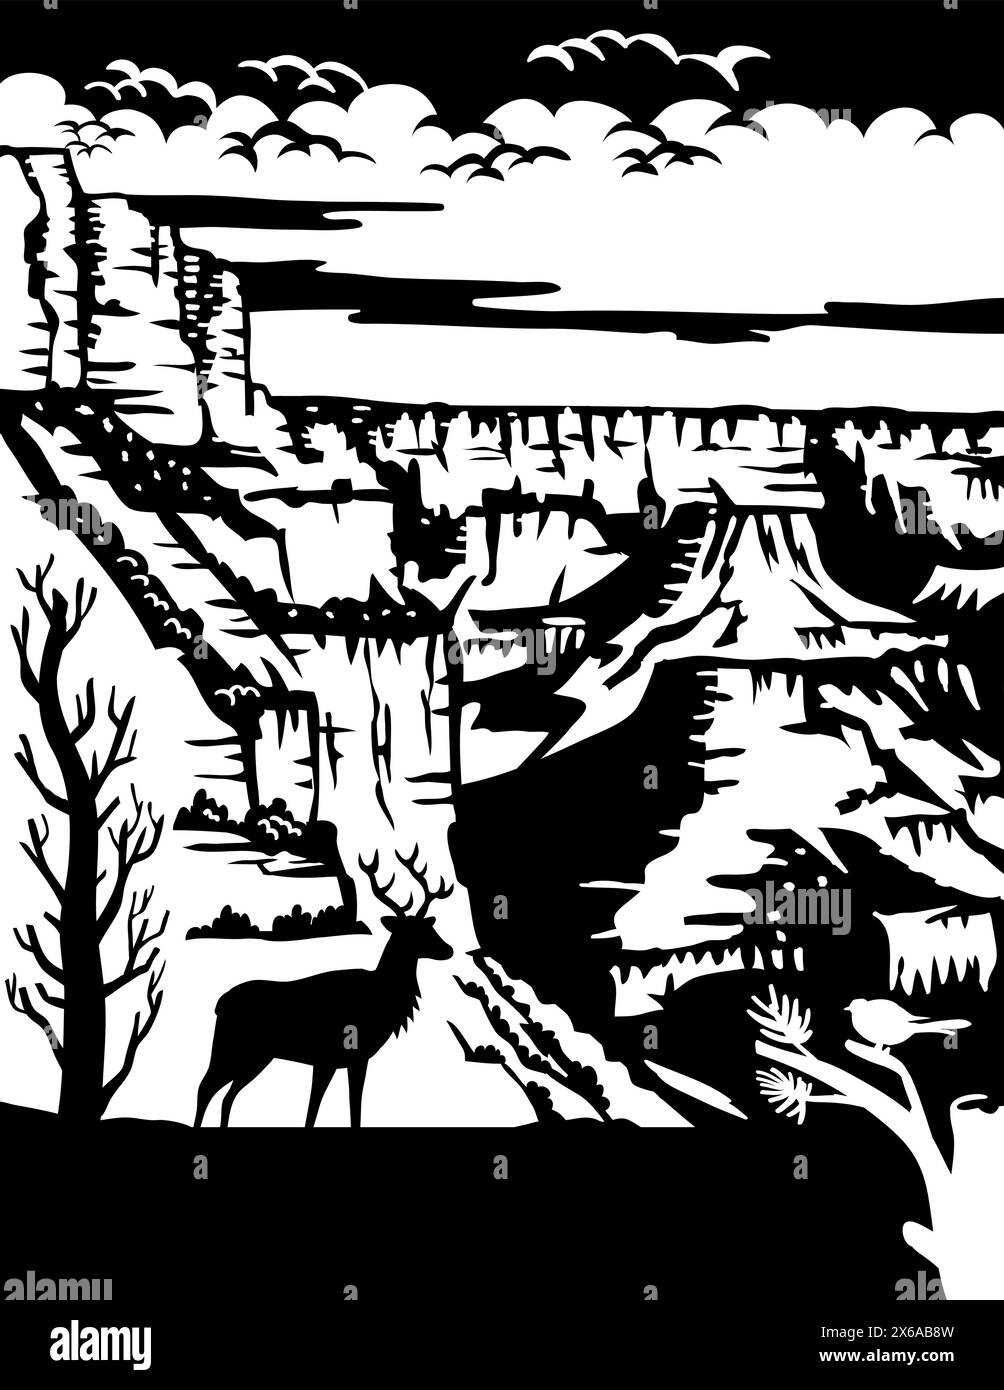 Schweizer Scherenschnitte oder Scheren Schnitt Illustration der Silhouette eines Elchs am Südrand des Grand Canyon National Park in der Nähe von Tusayan, Arizona, United St Stock Vektor